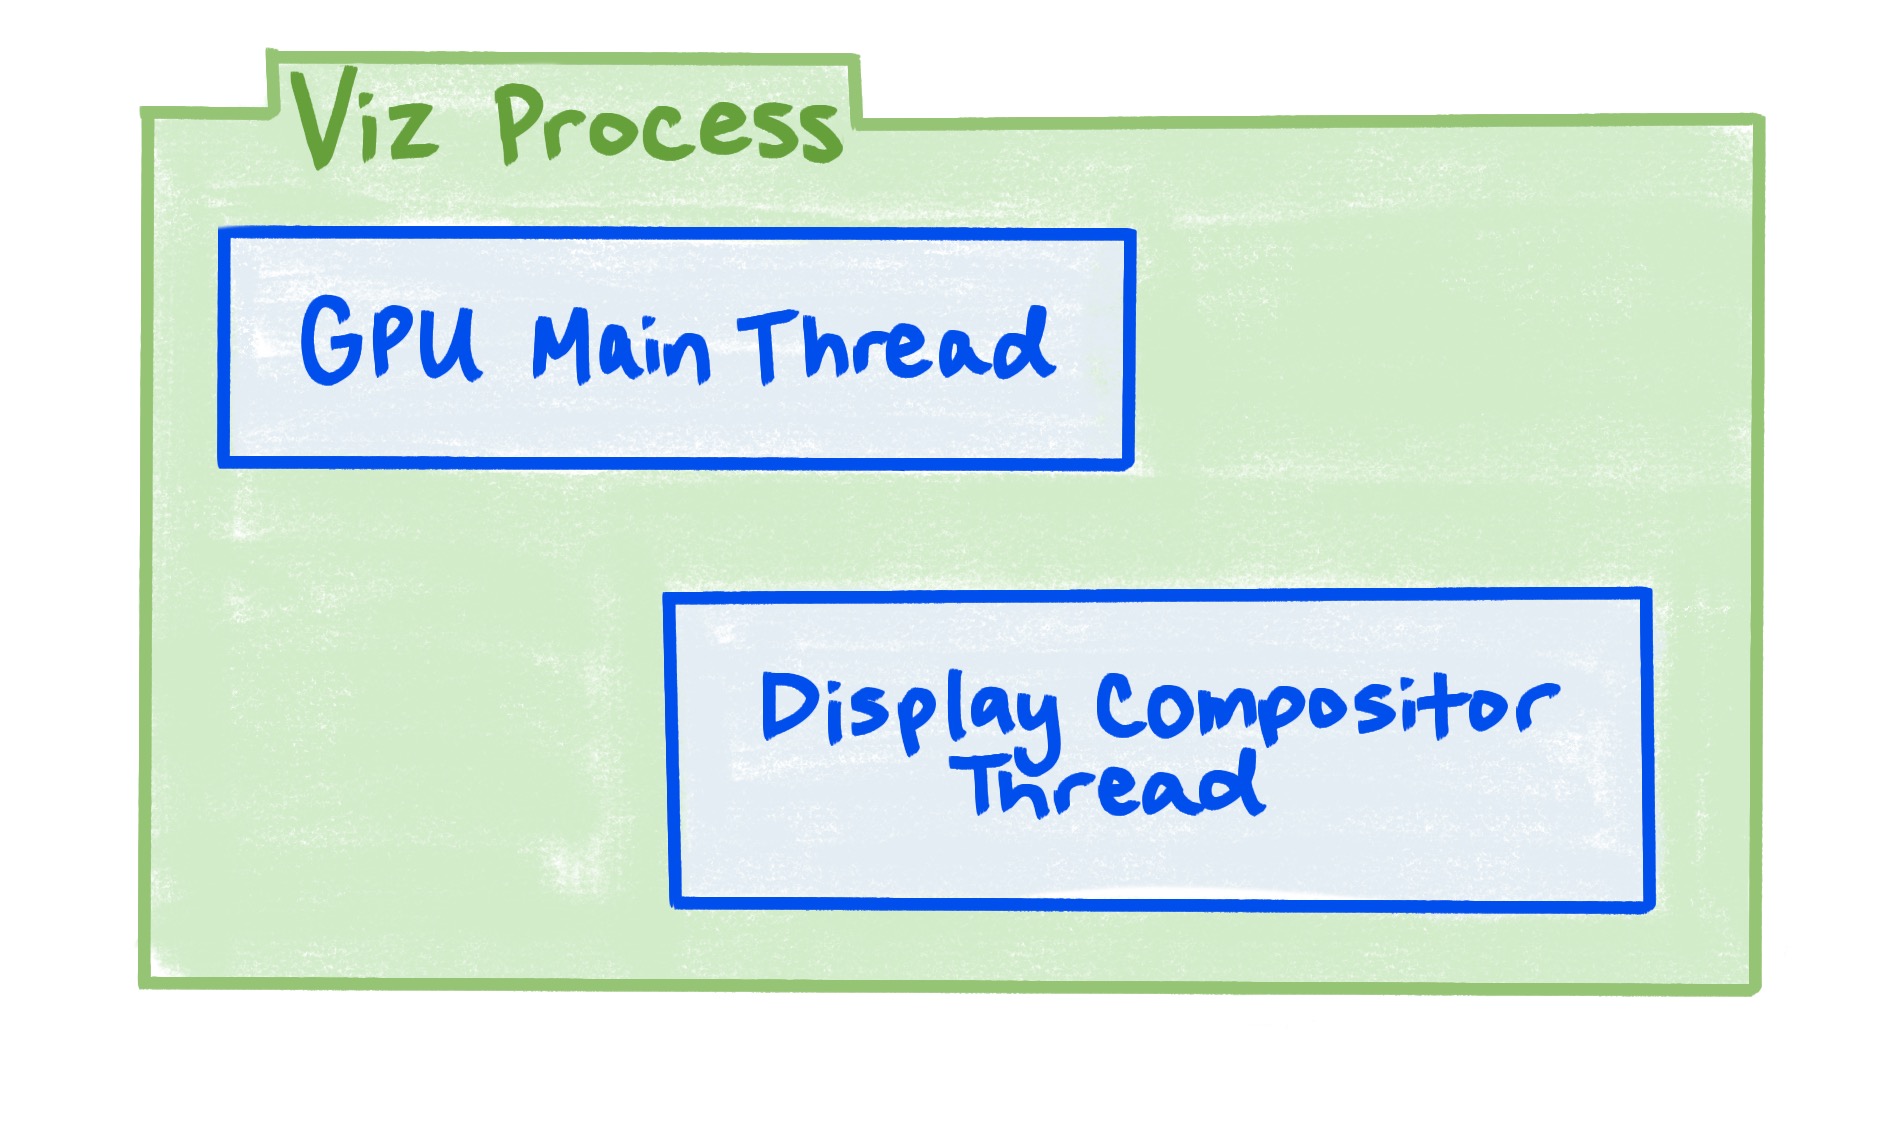 Quy trình Viz bao gồm luồng chính của GPU và luồng trình tổng hợp hiển thị.